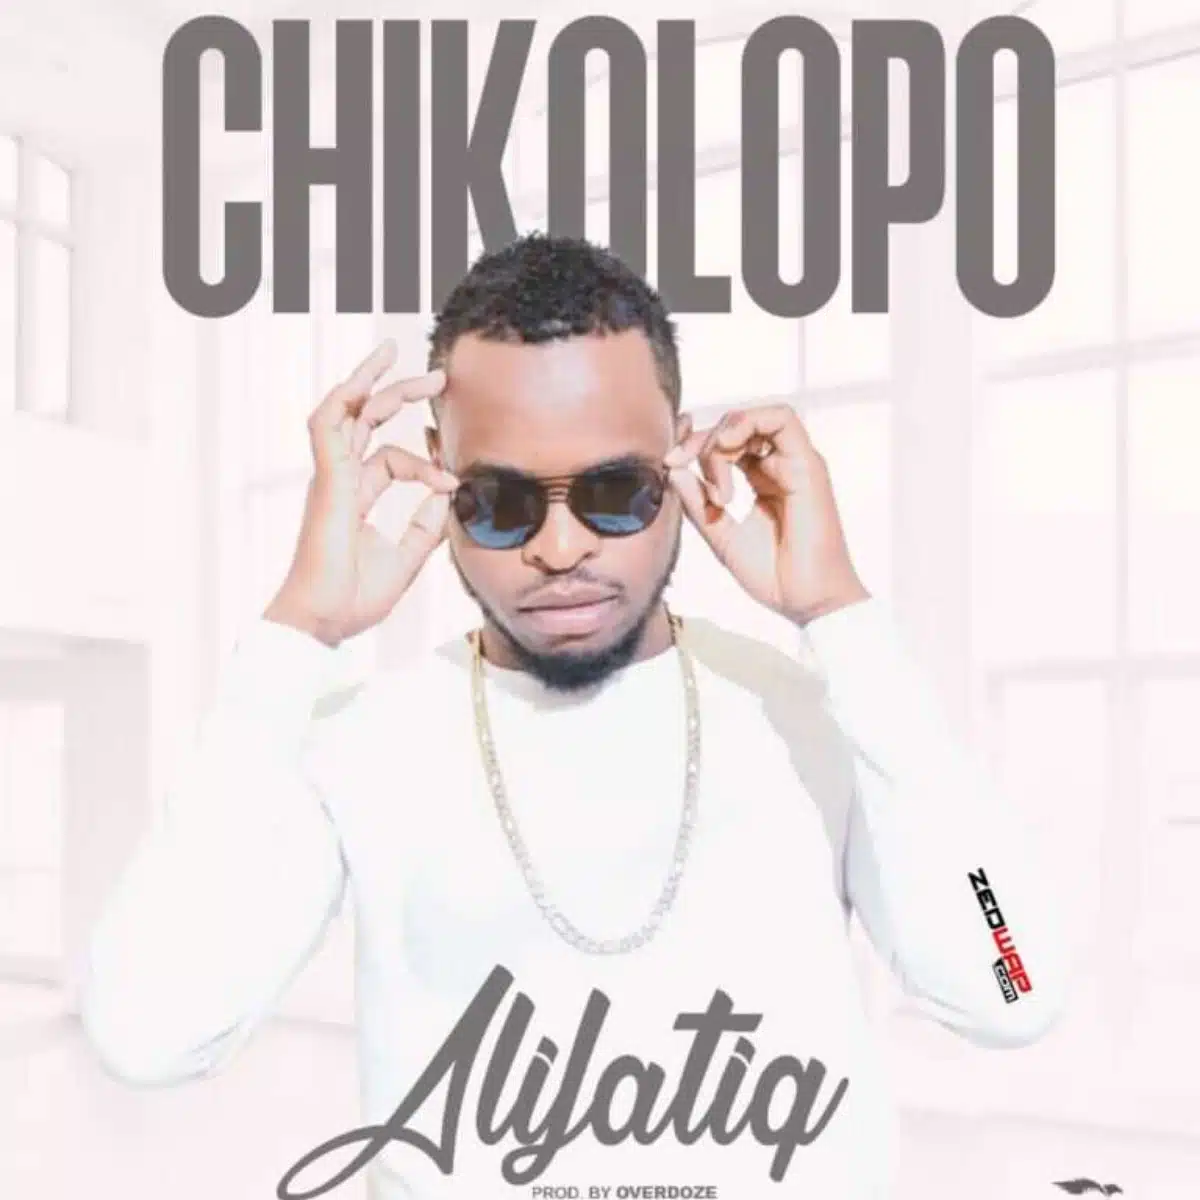 DOWNLOAD: AlifatiQ – “Chikolopo” Mp3